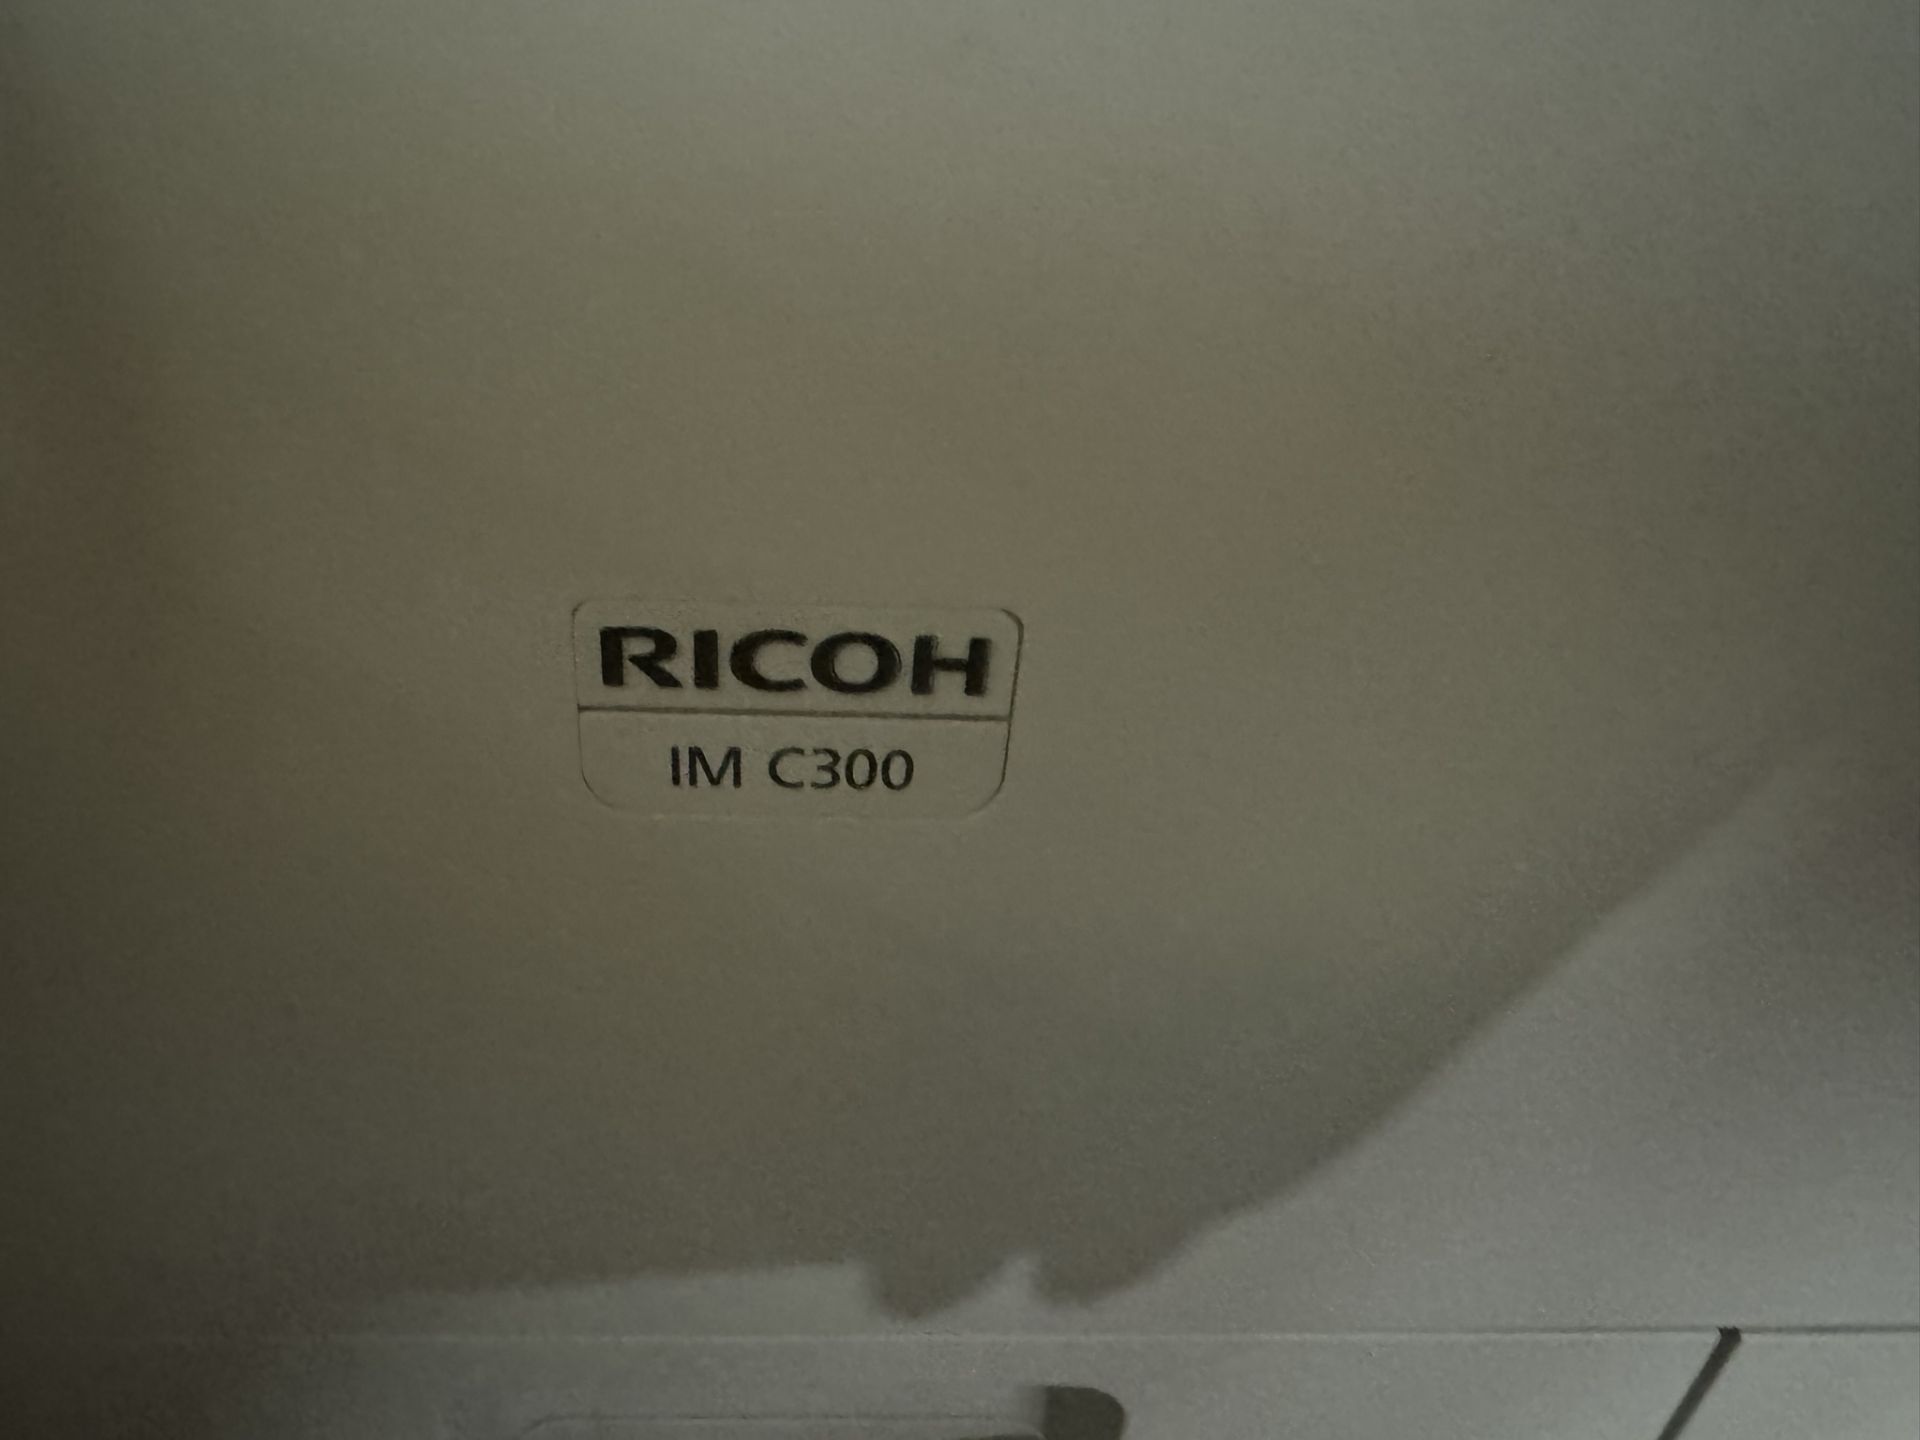 Ricoh IMC300 A4 Colour Multifunction laser printer - Bild 3 aus 4